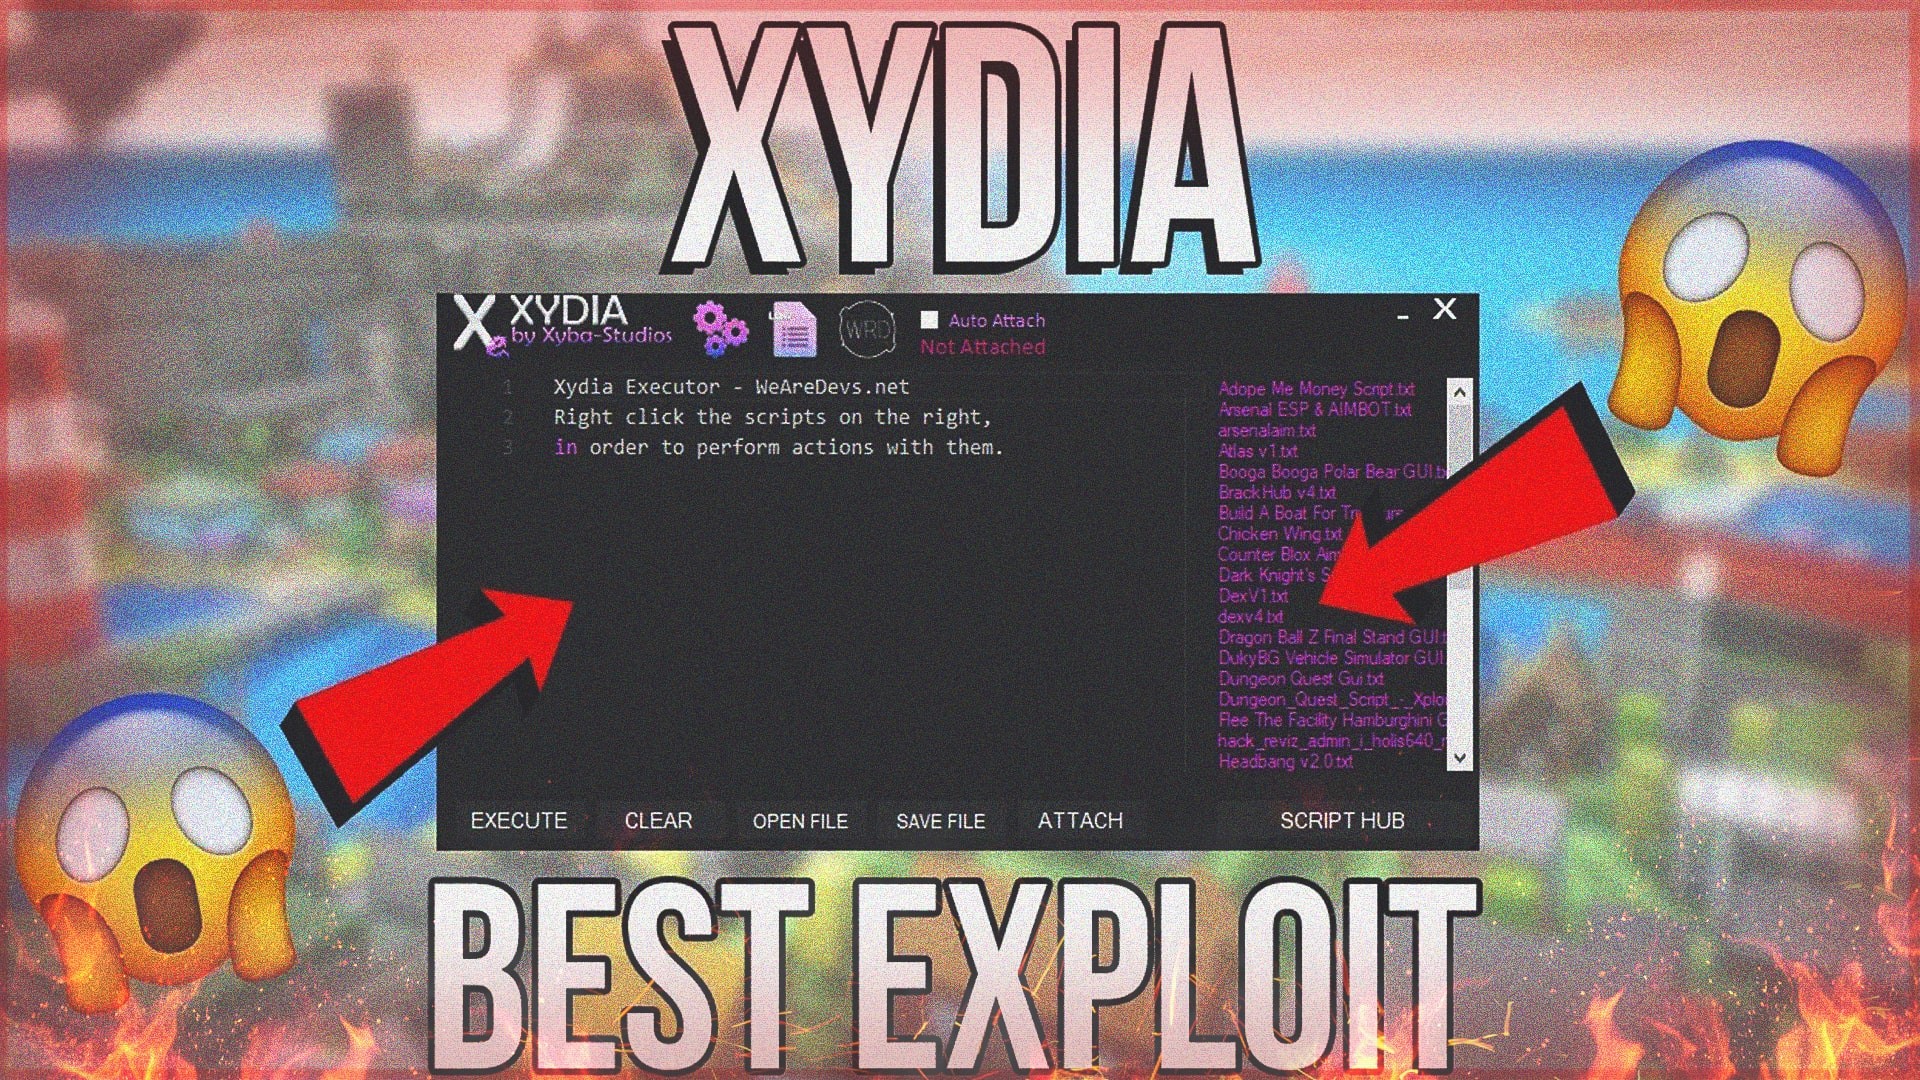 New Roblox Exploit Xydia Exploit Teletype - new roblox hack script exploit working booga booga